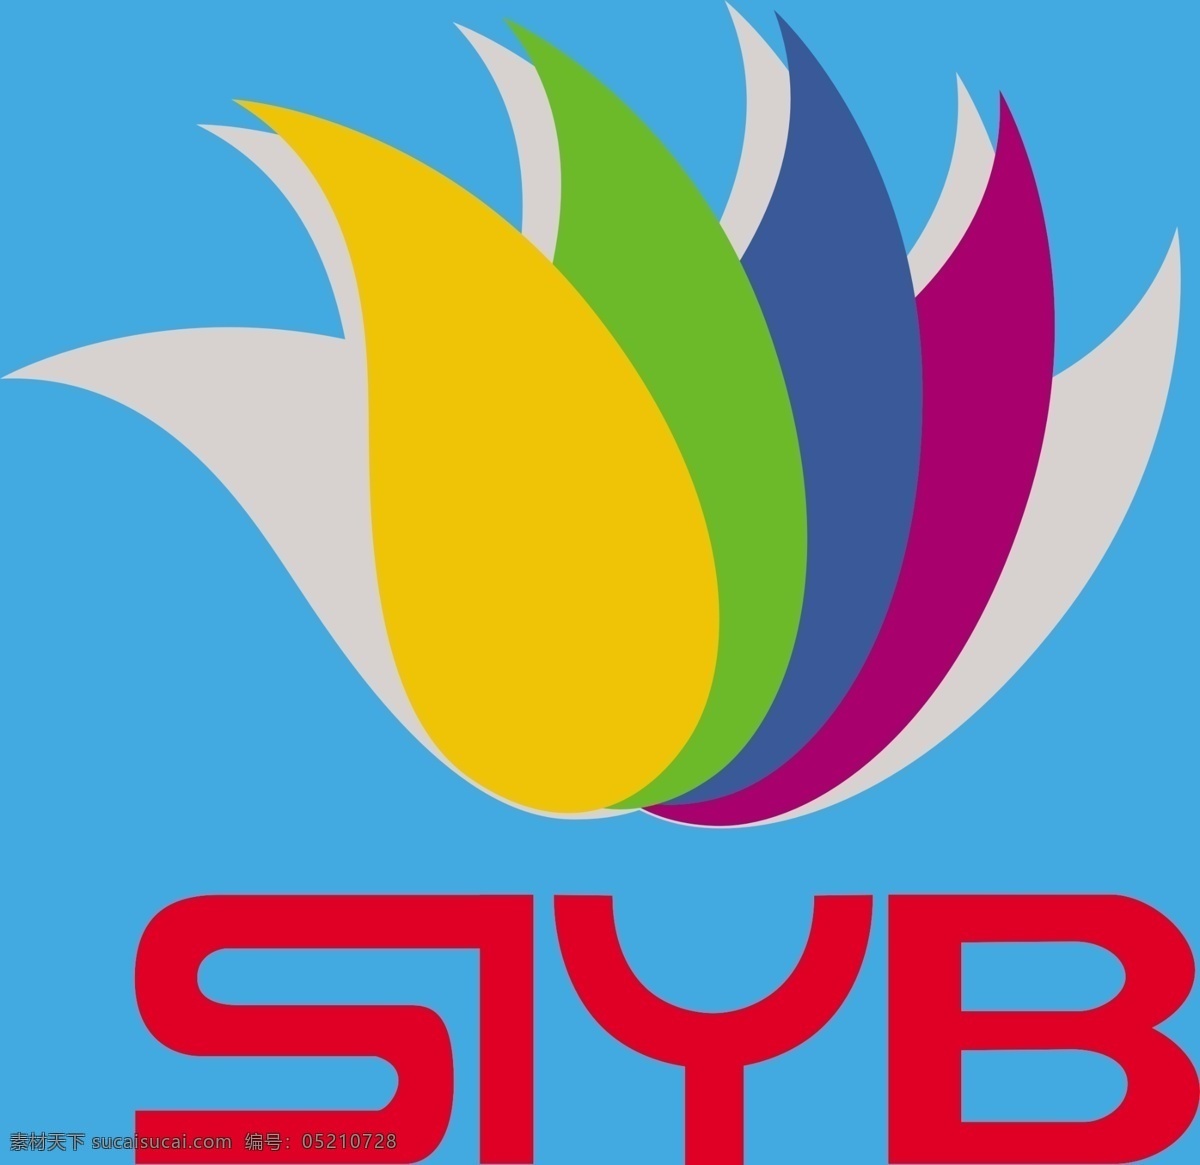 创业 培训 标志 广告设计模板 其他模版 源文件 创业培训 siyb 海报 企业文化海报